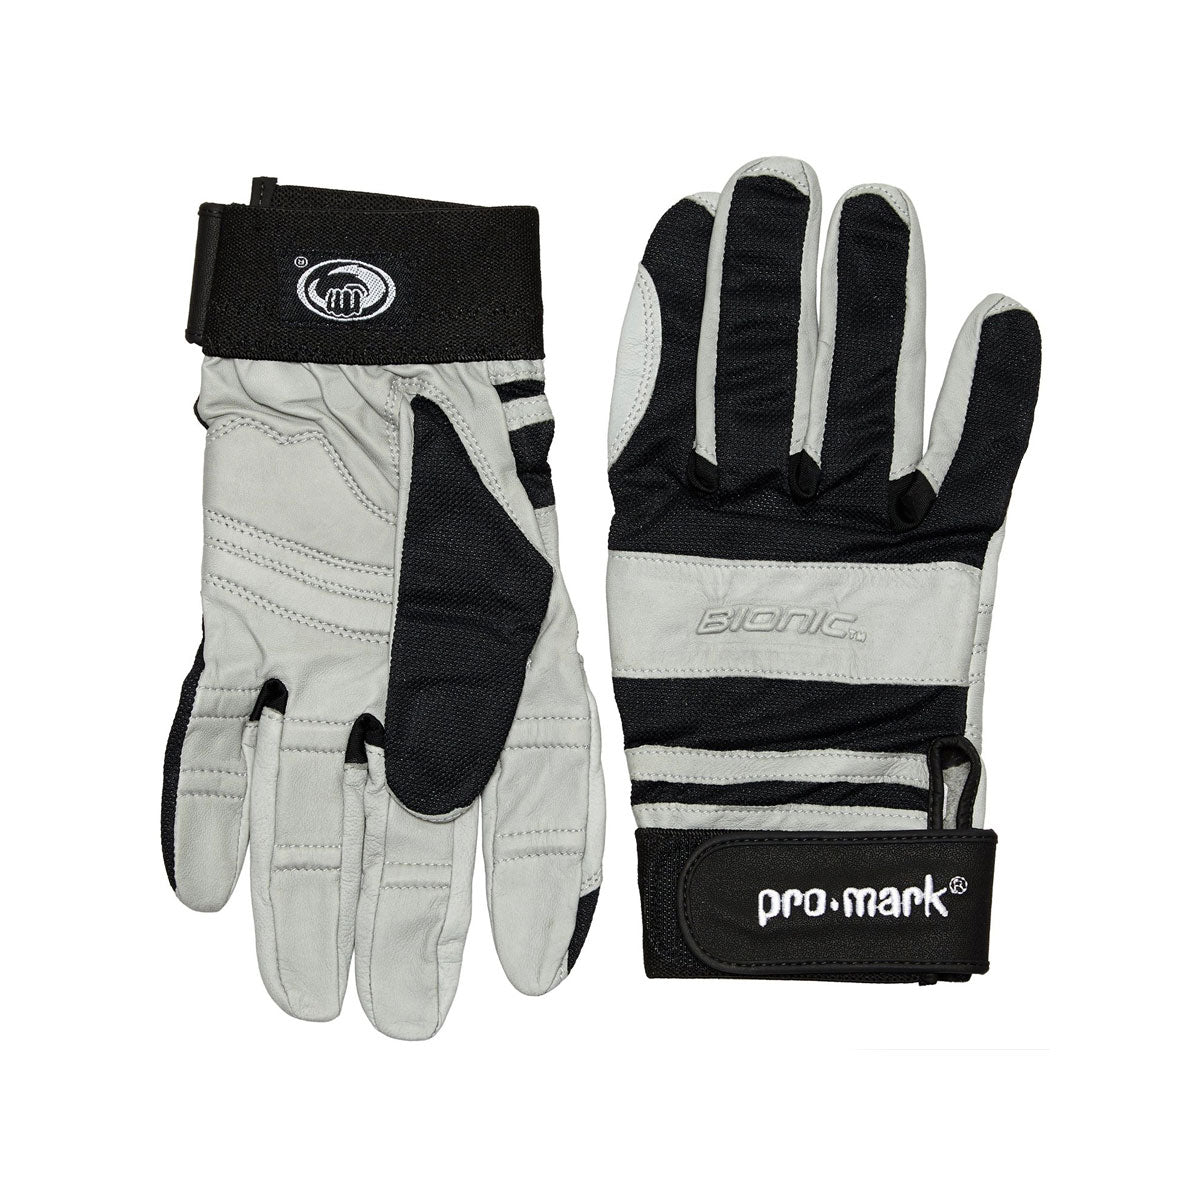 Promark DGM Medium Drum Gloves